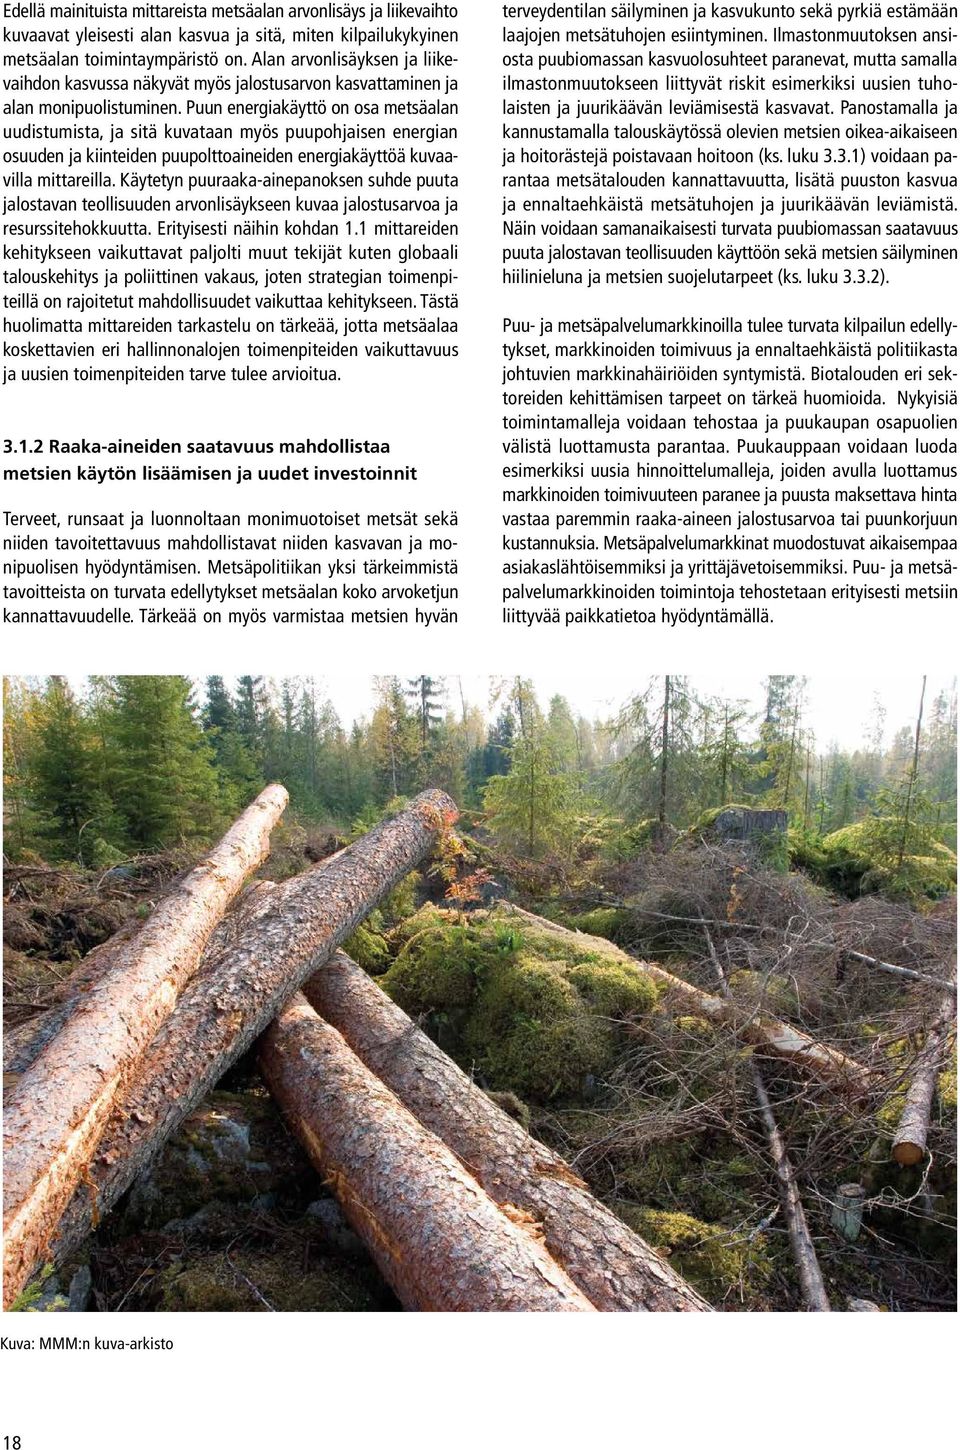 Puun energiakäyttö on osa metsäalan uudistumista, ja sitä kuvataan myös puupohjaisen energian osuuden ja kiinteiden puupolttoaineiden energiakäyttöä kuvaavilla mittareilla.